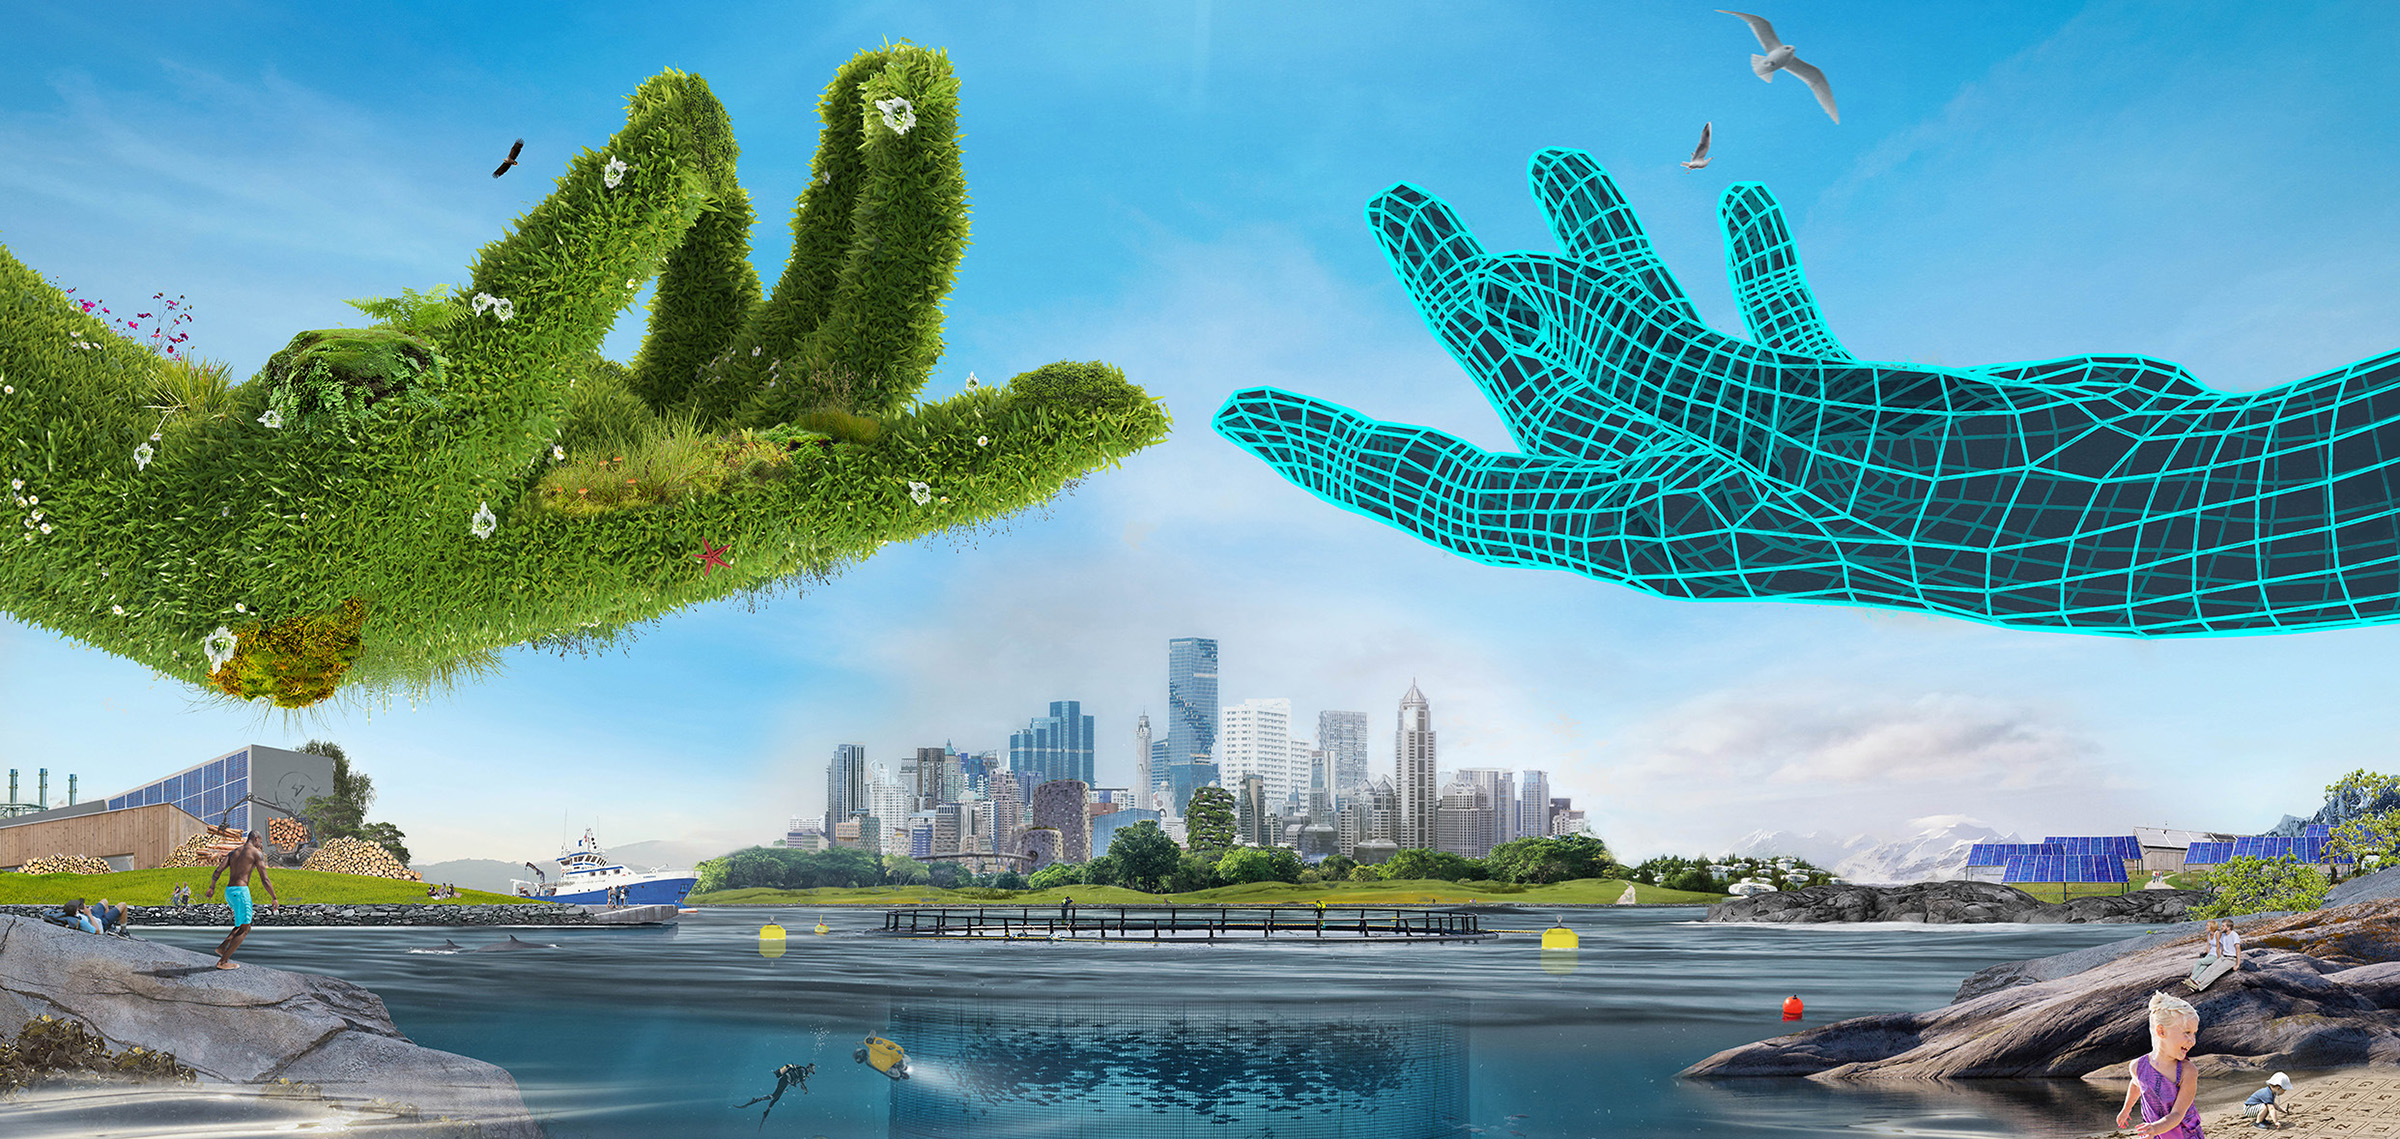 En digital hånd og en grønn plantehånd møtes i en illustrtasjon med mange elementer